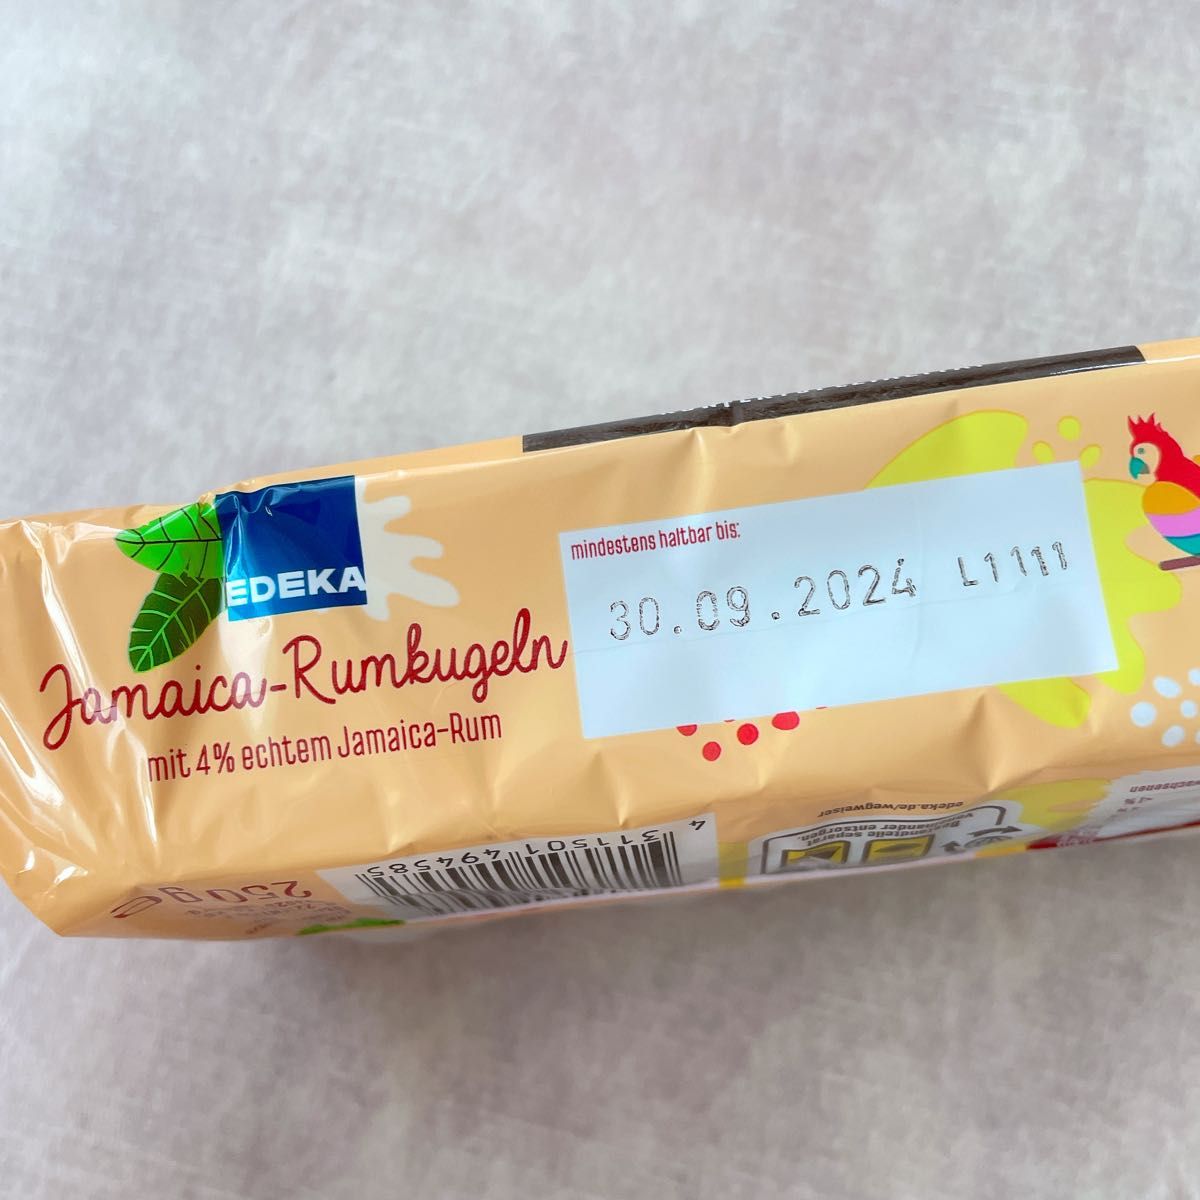 EDEKA【日本未販売】Jamaica Rumkugeln 250g ジャマイカラム　ドイツチョコレート